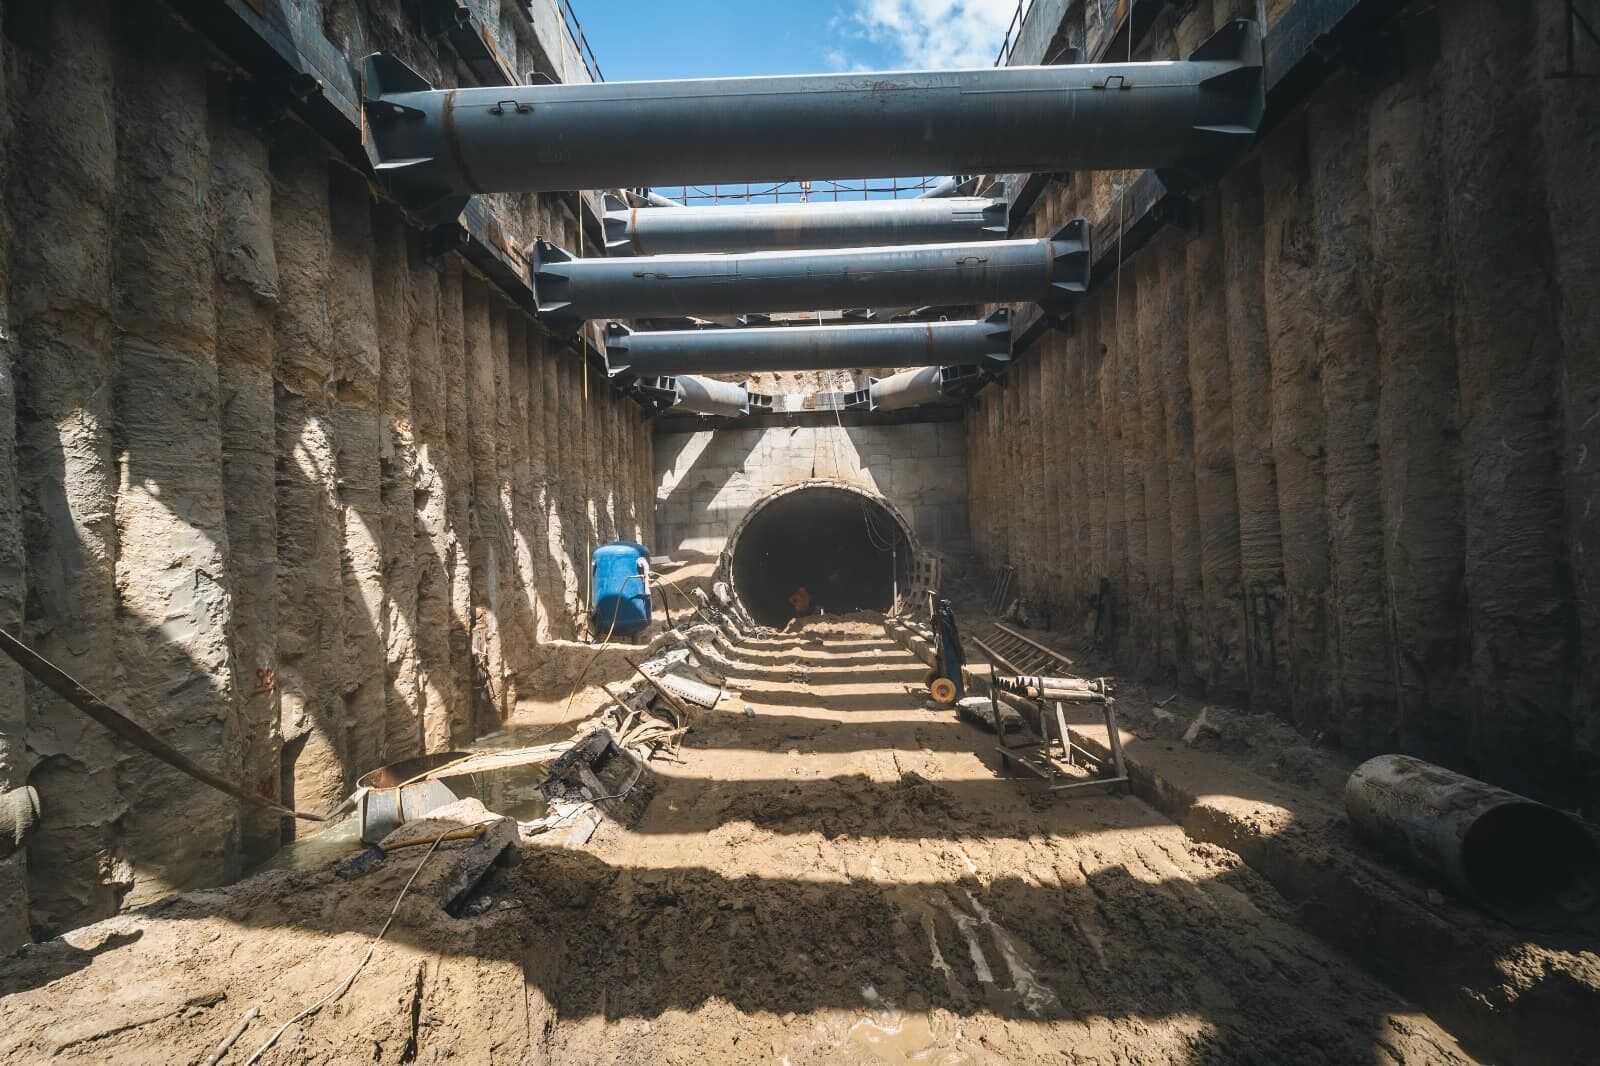 Начали одевать старые тоннели в железобетонную "рубашку": как ремонтируют перегон между станциями метро "Демеевская" и "Лыбедская". Фото